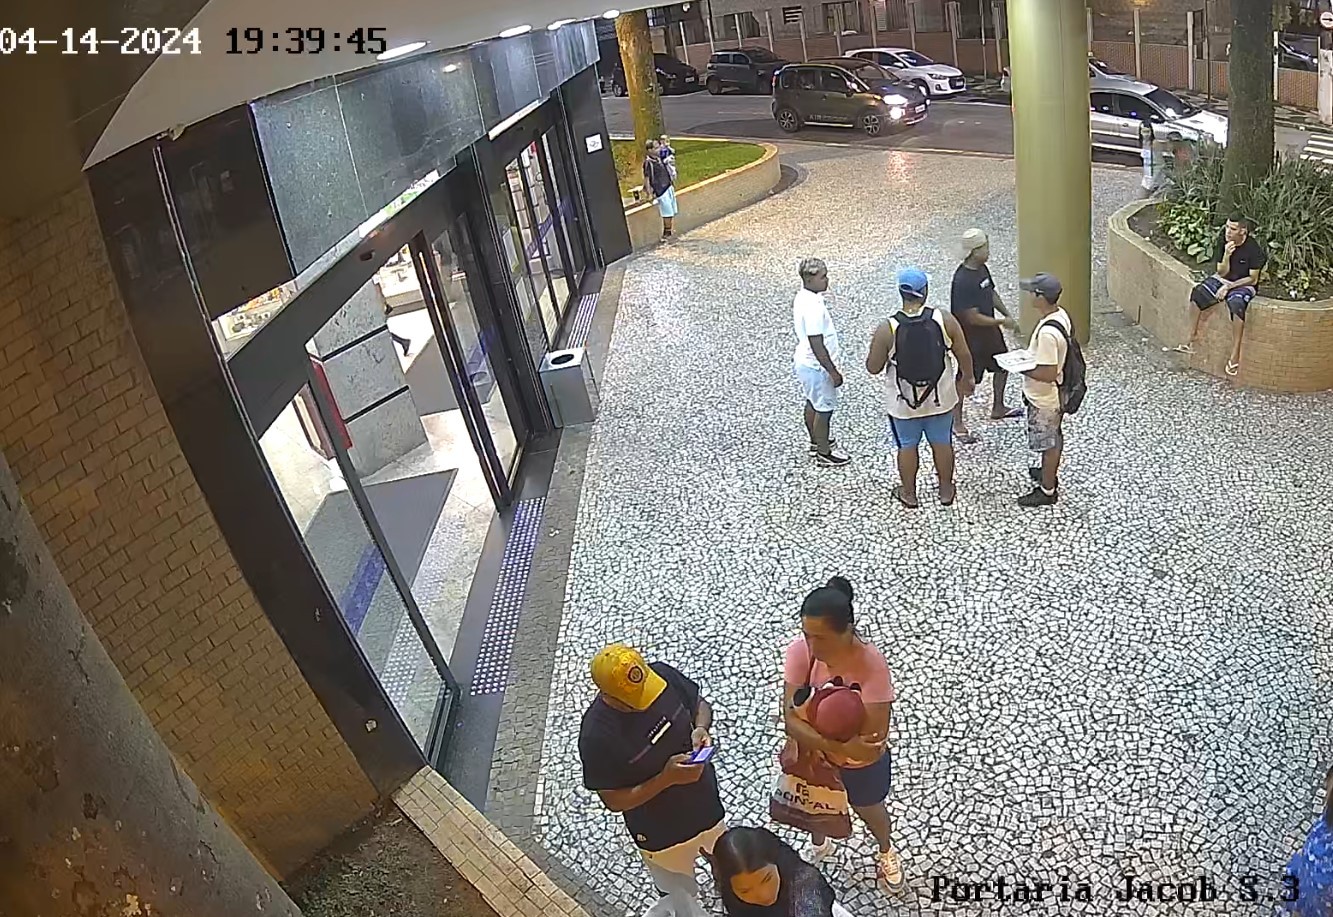 Grupo é preso por ameaçar e extorquir vítimas em frente a shopping de São Vicente, SP 